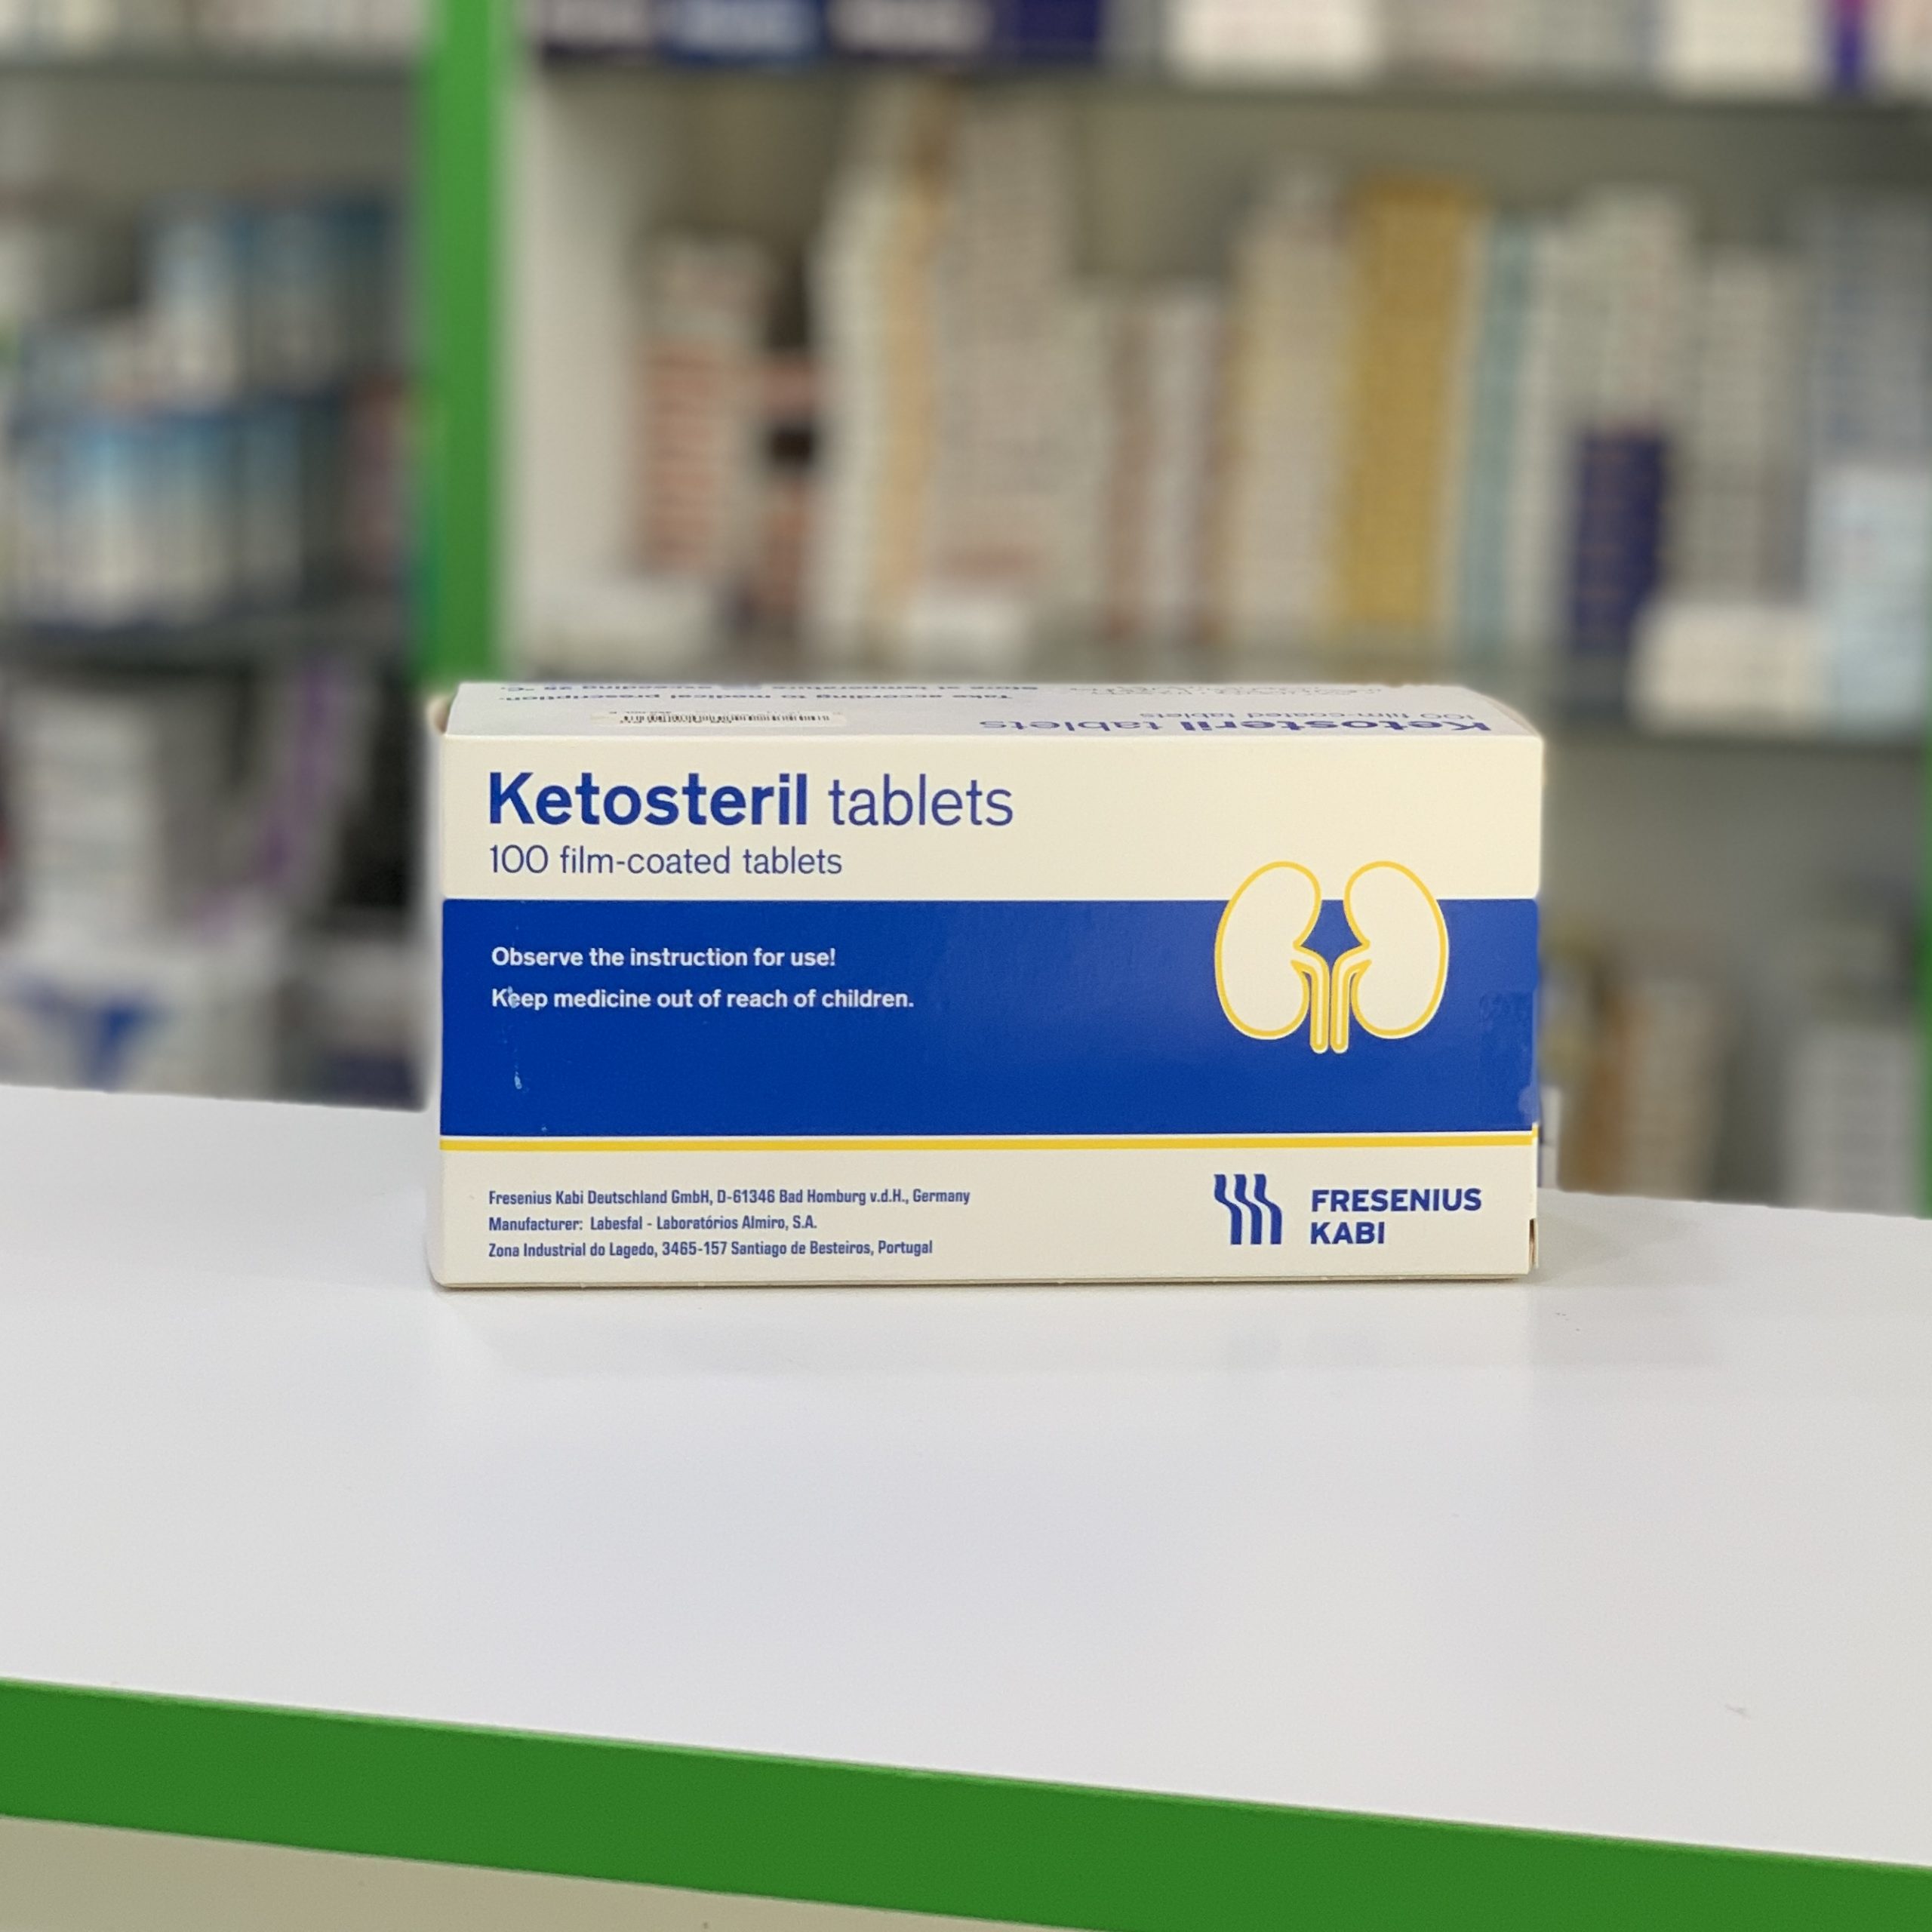 Кетостерил, 100 таблет - Русская аптека в Египте